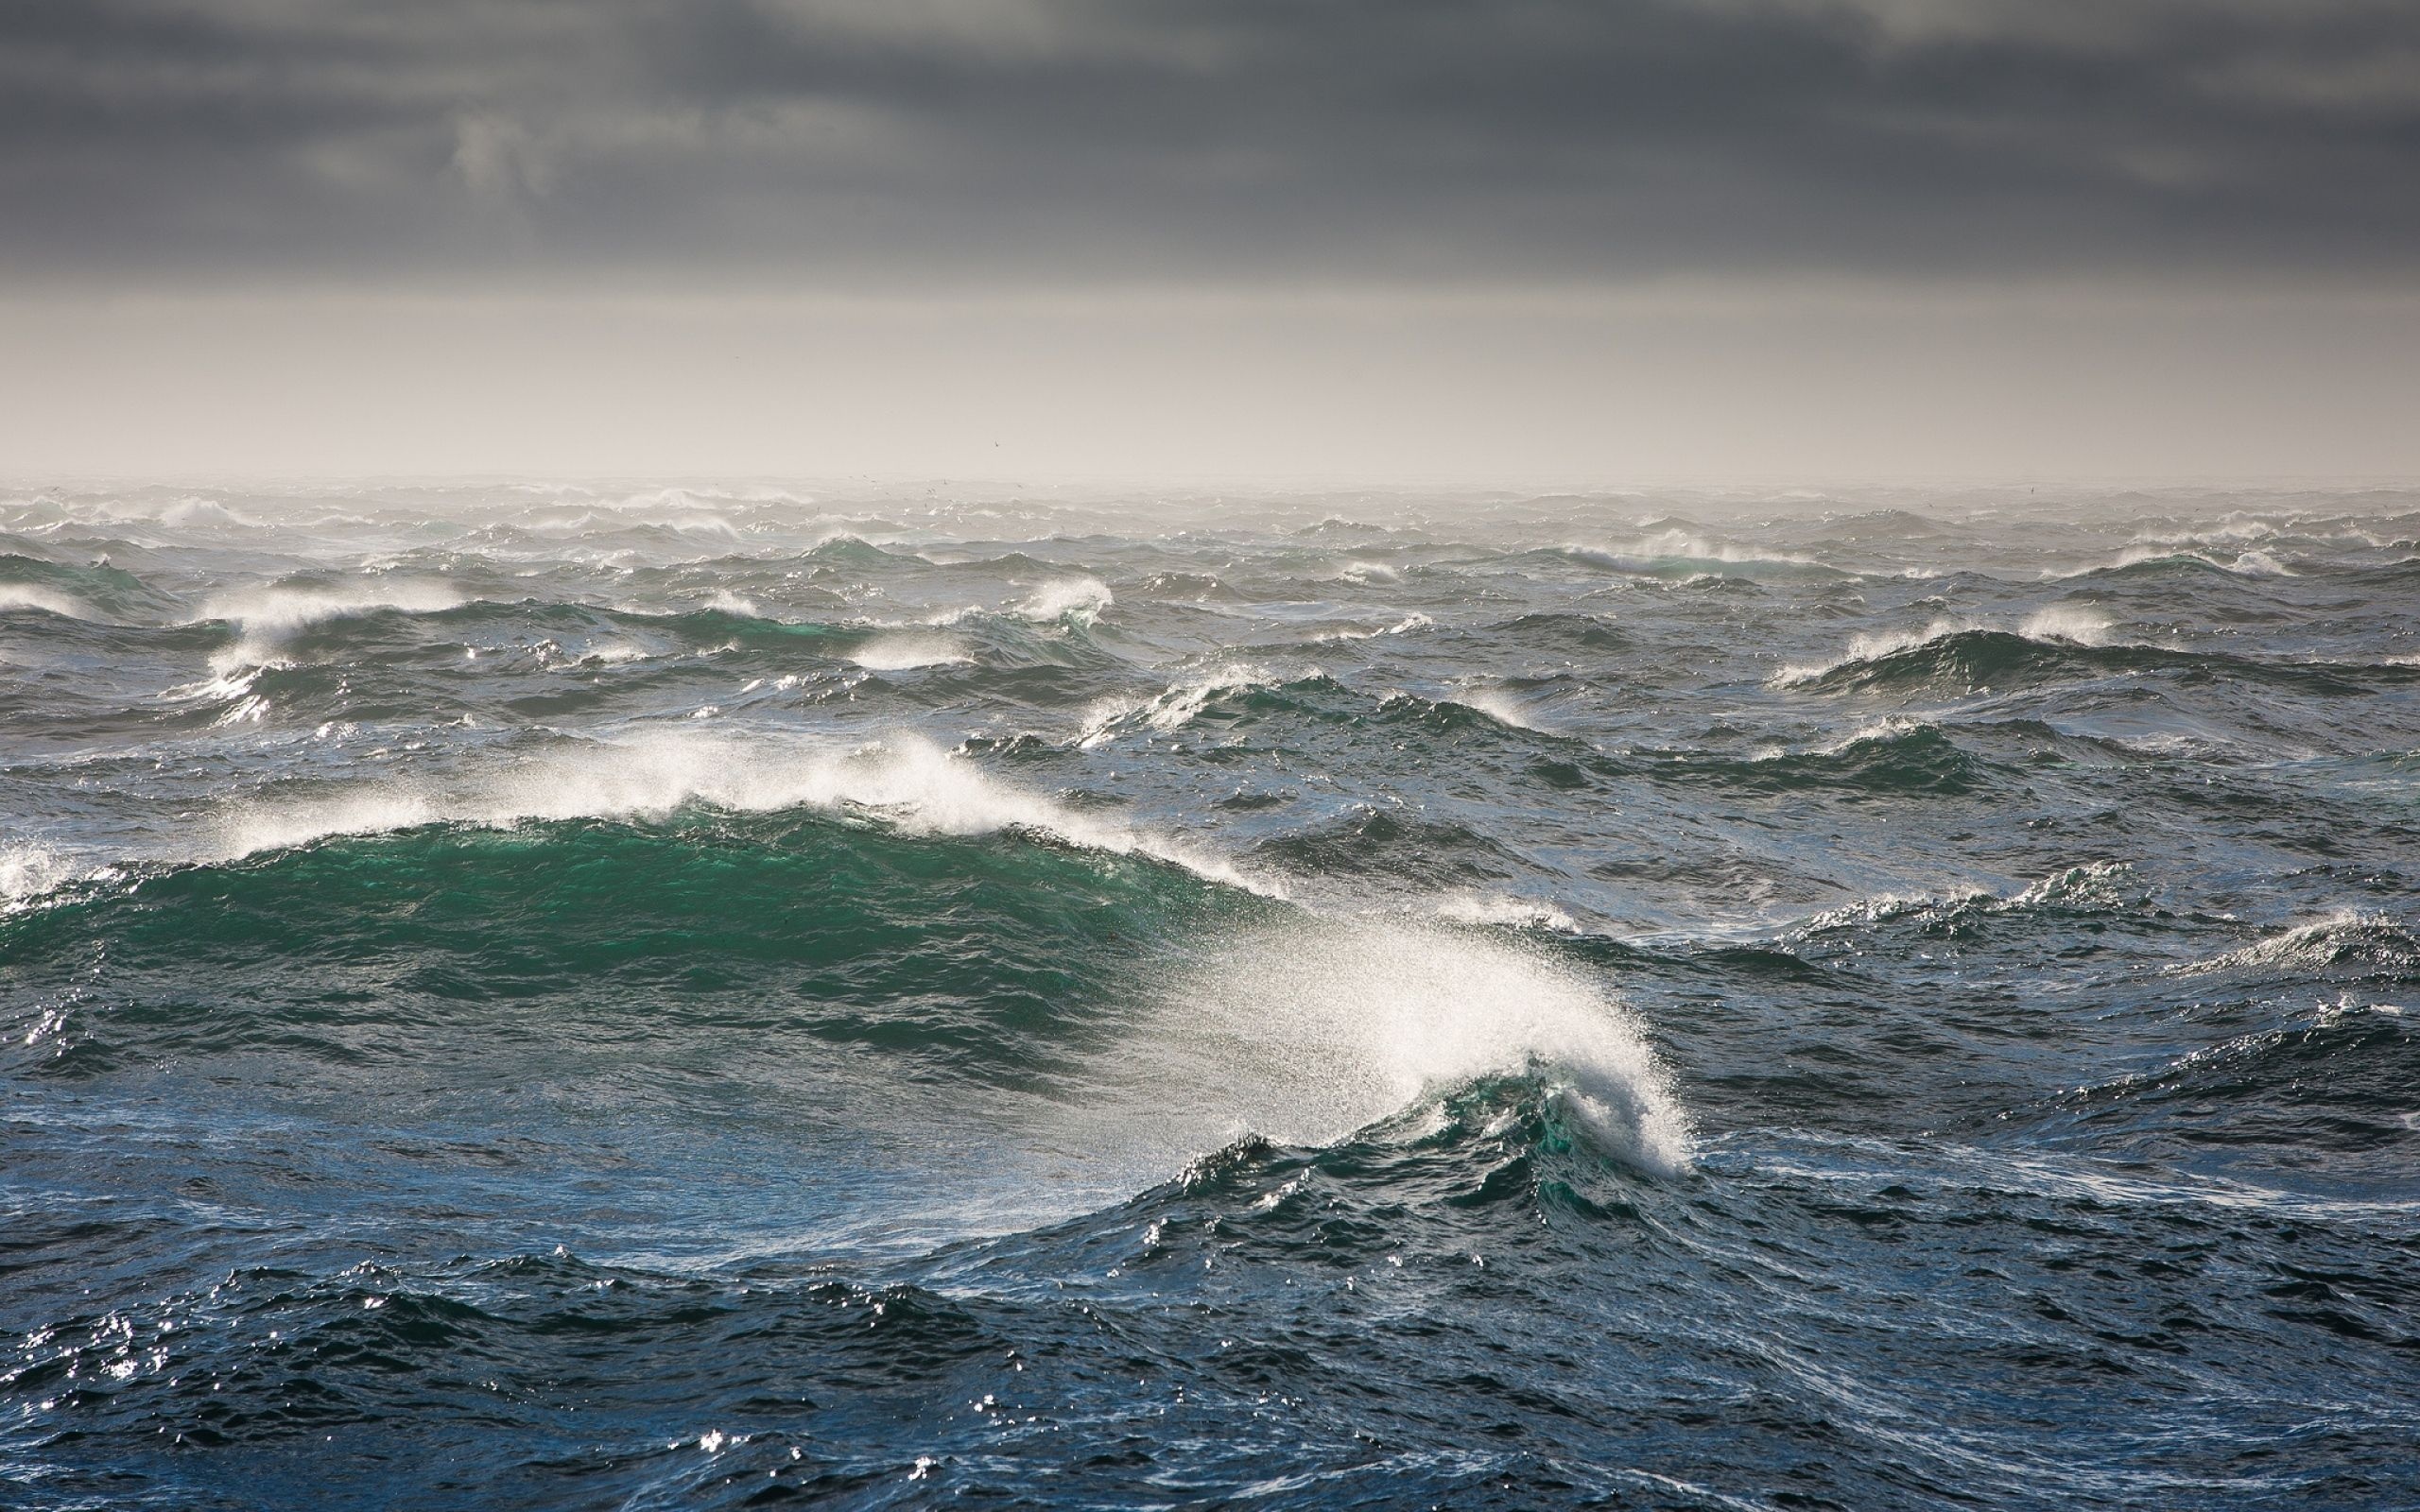 Bering Sea, Powerful waves, Stormy weather, Unforgiving ocean, 2560x1600 HD Desktop